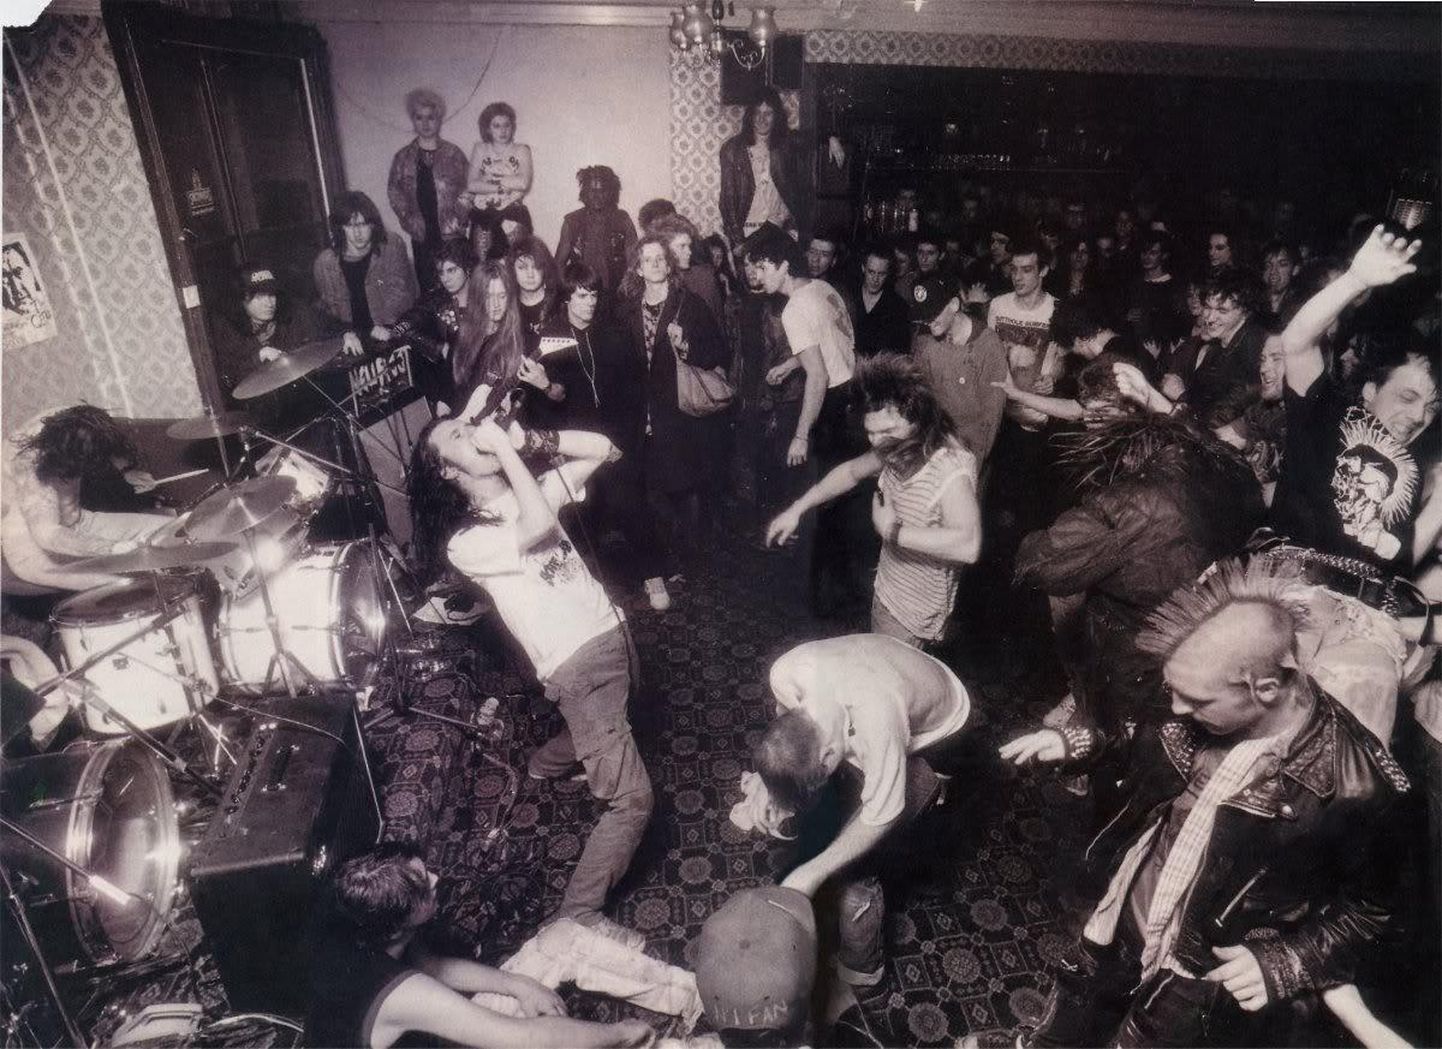 Pilt, mida vaadates võib kuulda muusikat. Grindcore-pioneerid Napalm Death 1988. aastal Londonis.